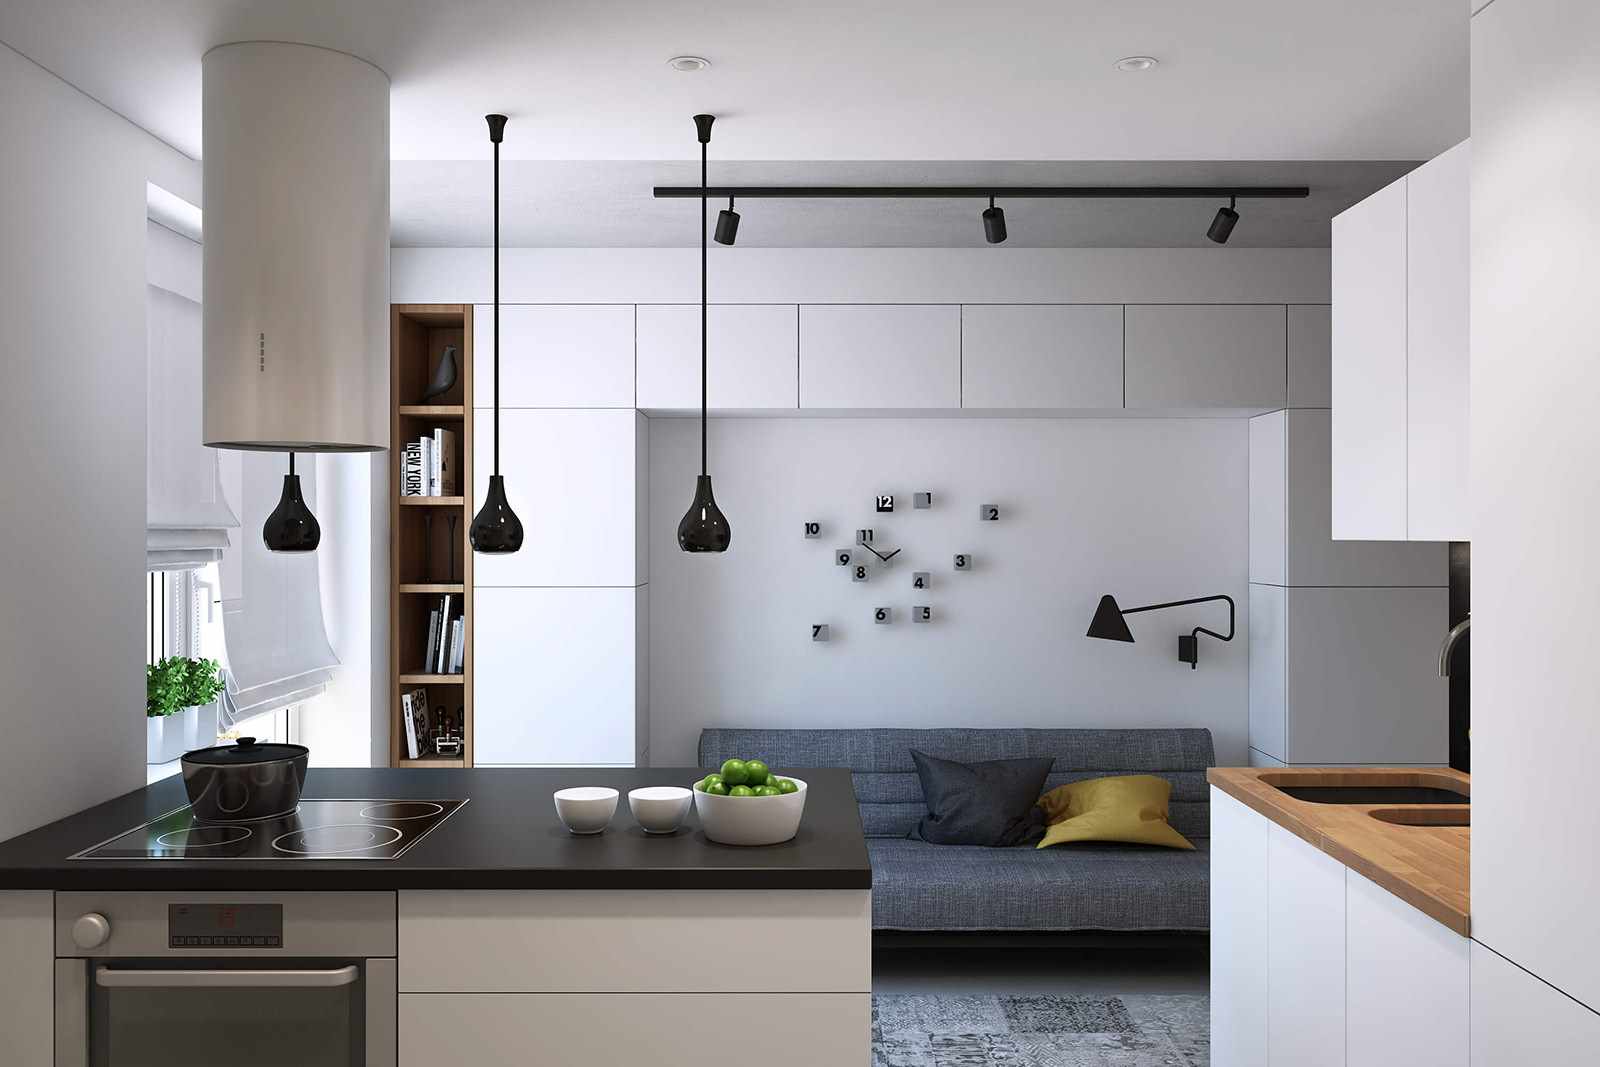 Przykład pięknie zaprojektowanego salonu kuchennego o powierzchni 16 m2